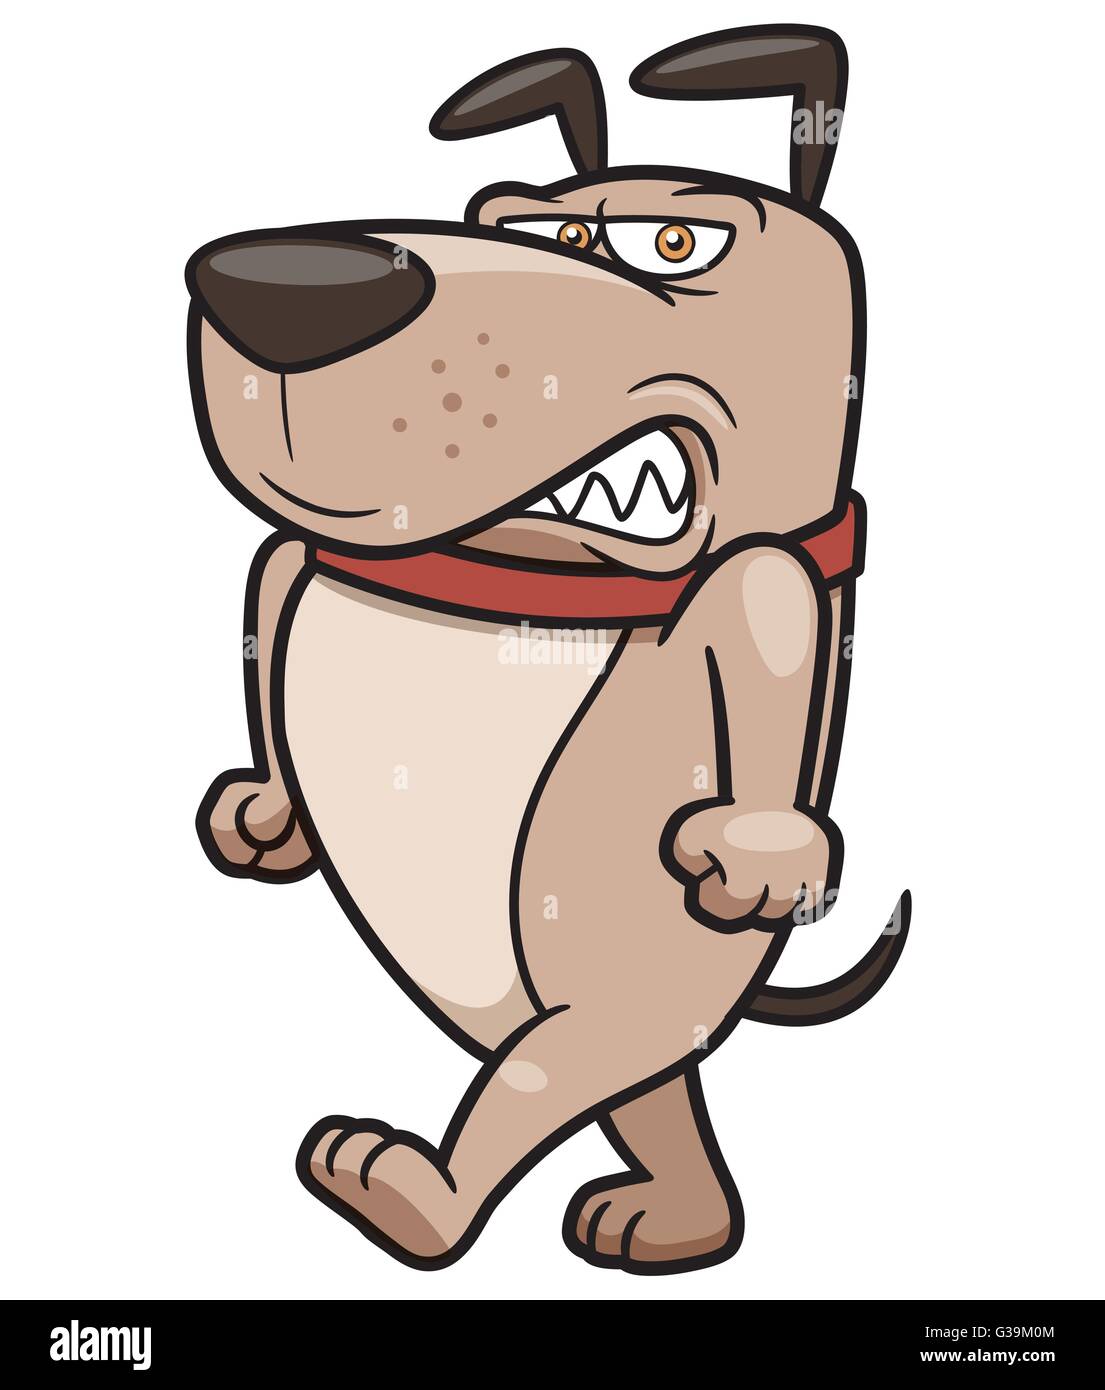 Illustrazione Vettoriale di arrabbiato cane Cartoon Illustrazione Vettoriale